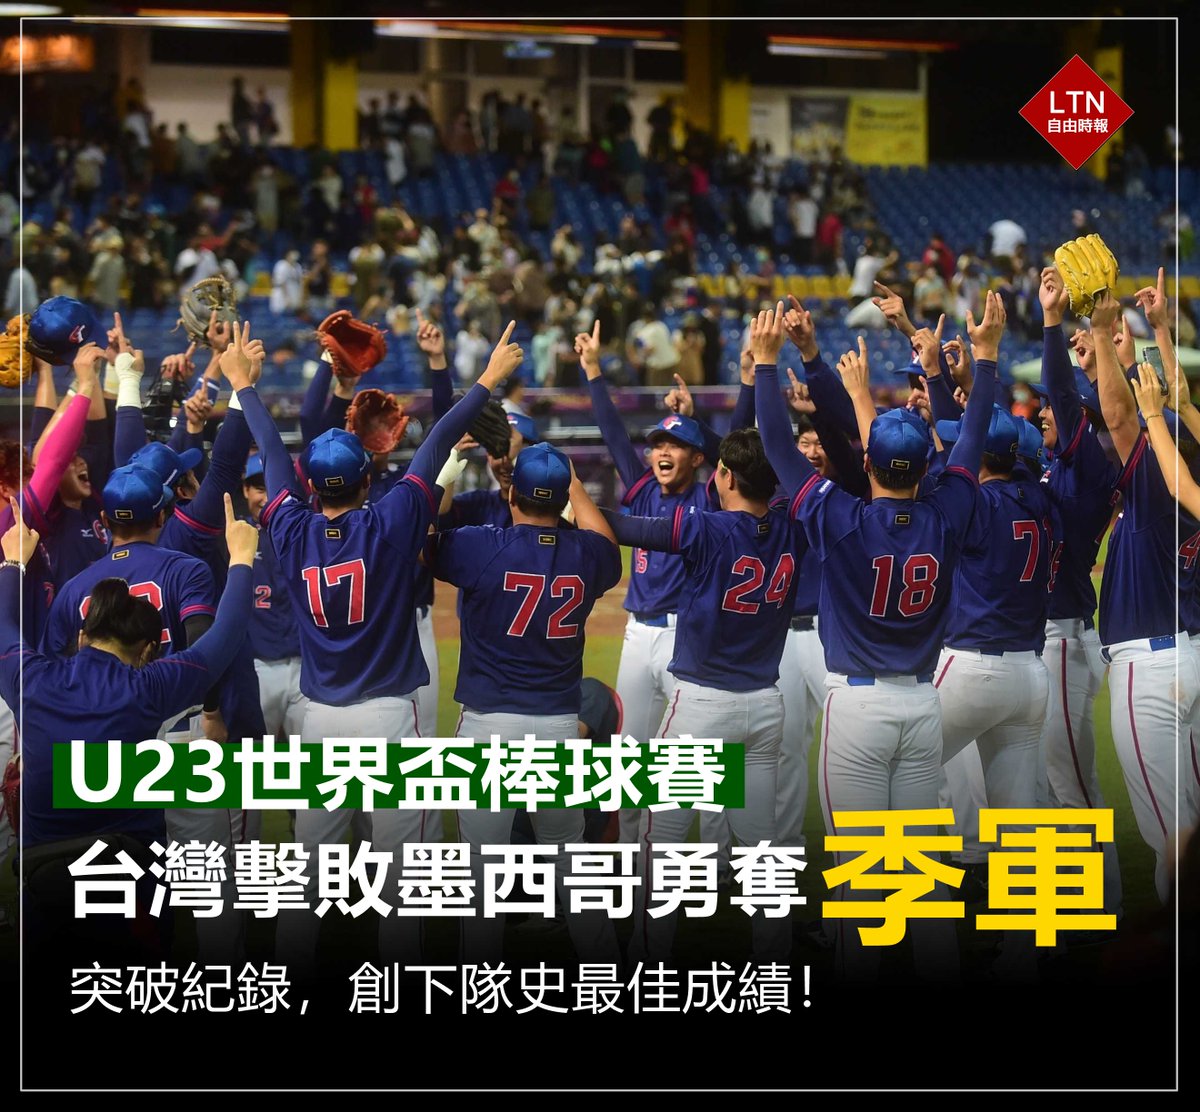 恭喜台灣隊拿下U23世界盃季軍！ 雖然進入循環賽以後打得比較掙扎，但最後一場我們把握住了！要給這些年輕小將喝采，你們很棒！ 圖文報導：https://t.co/nZi1dngfTd